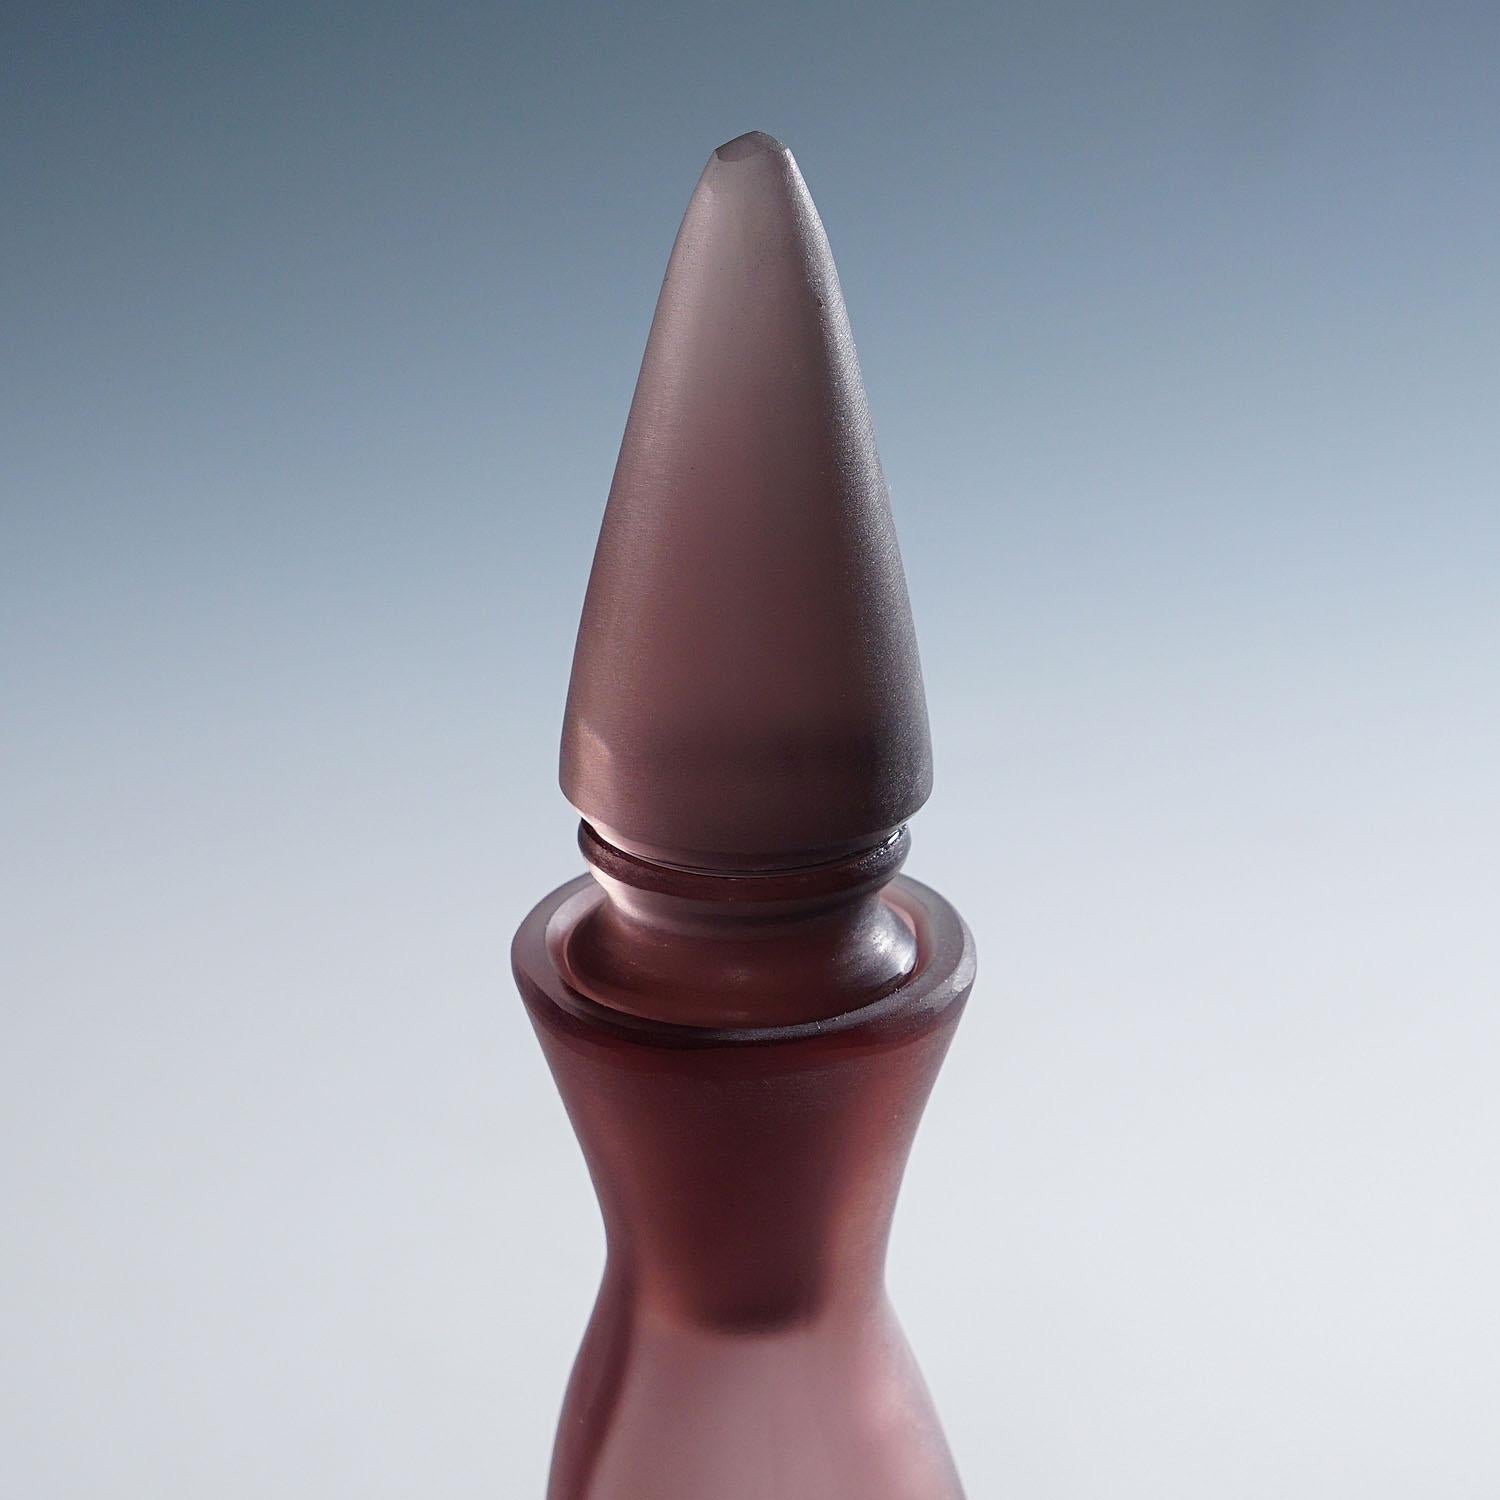 Italian Paolo Venini Inciso Glass Bottle Manufactured by Venini 1990s For Sale